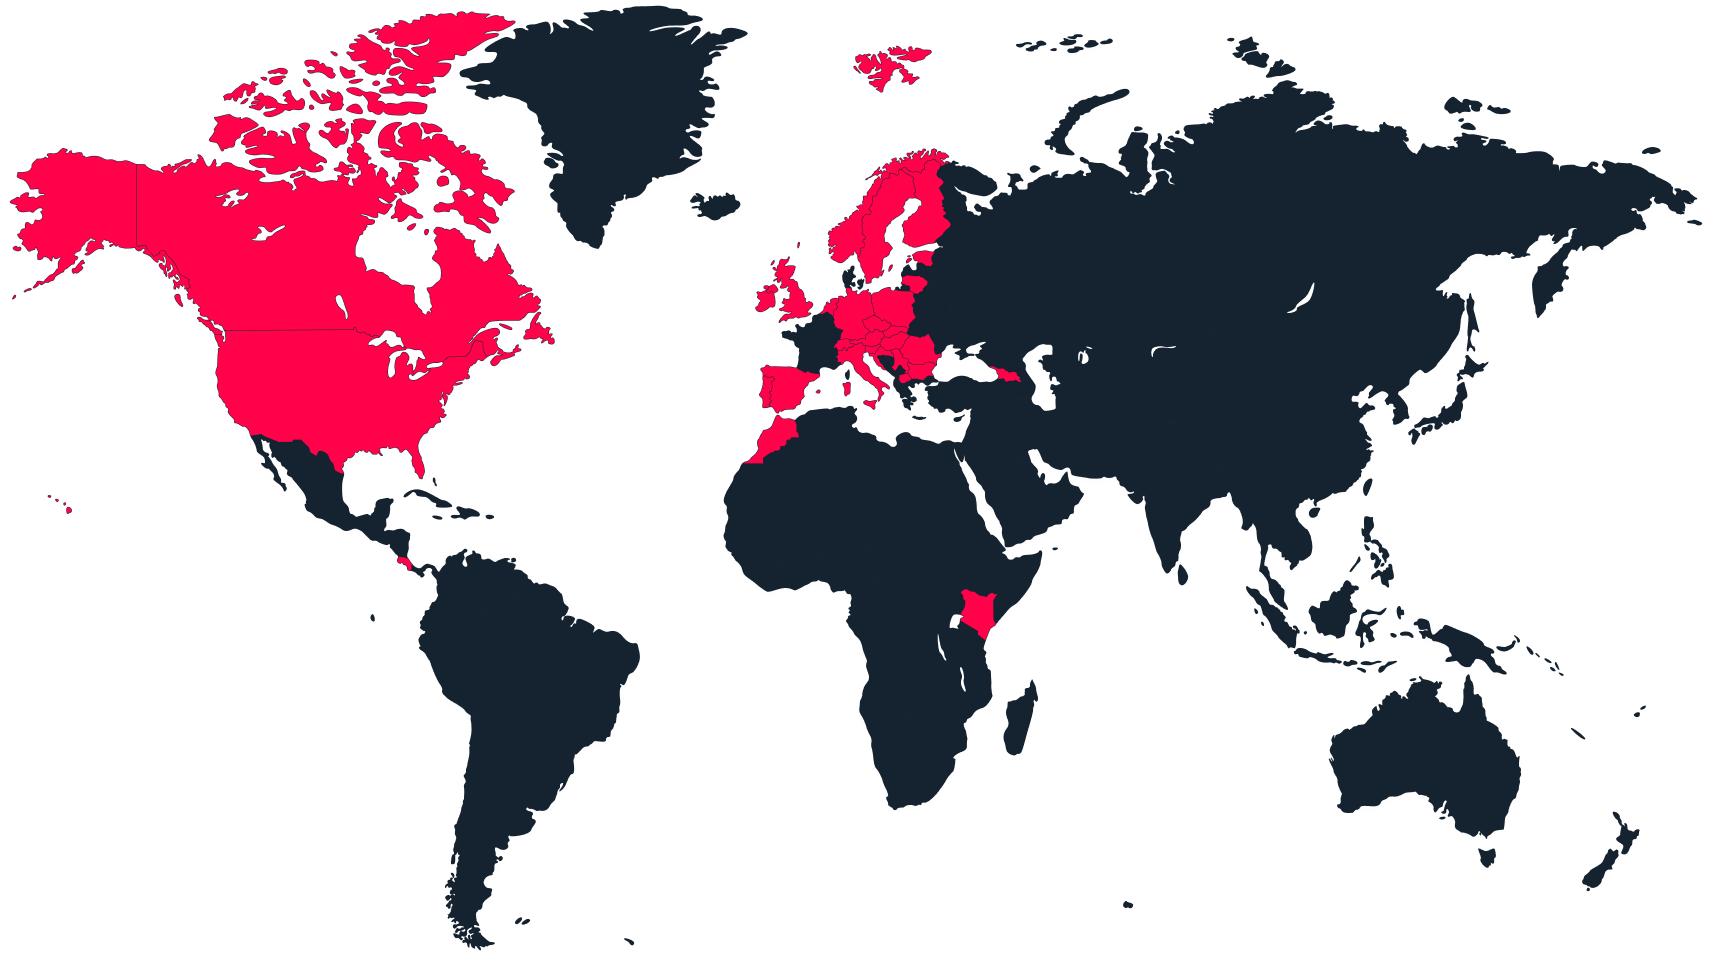 Une carte du monde avec les pays actifs marqués en rouge